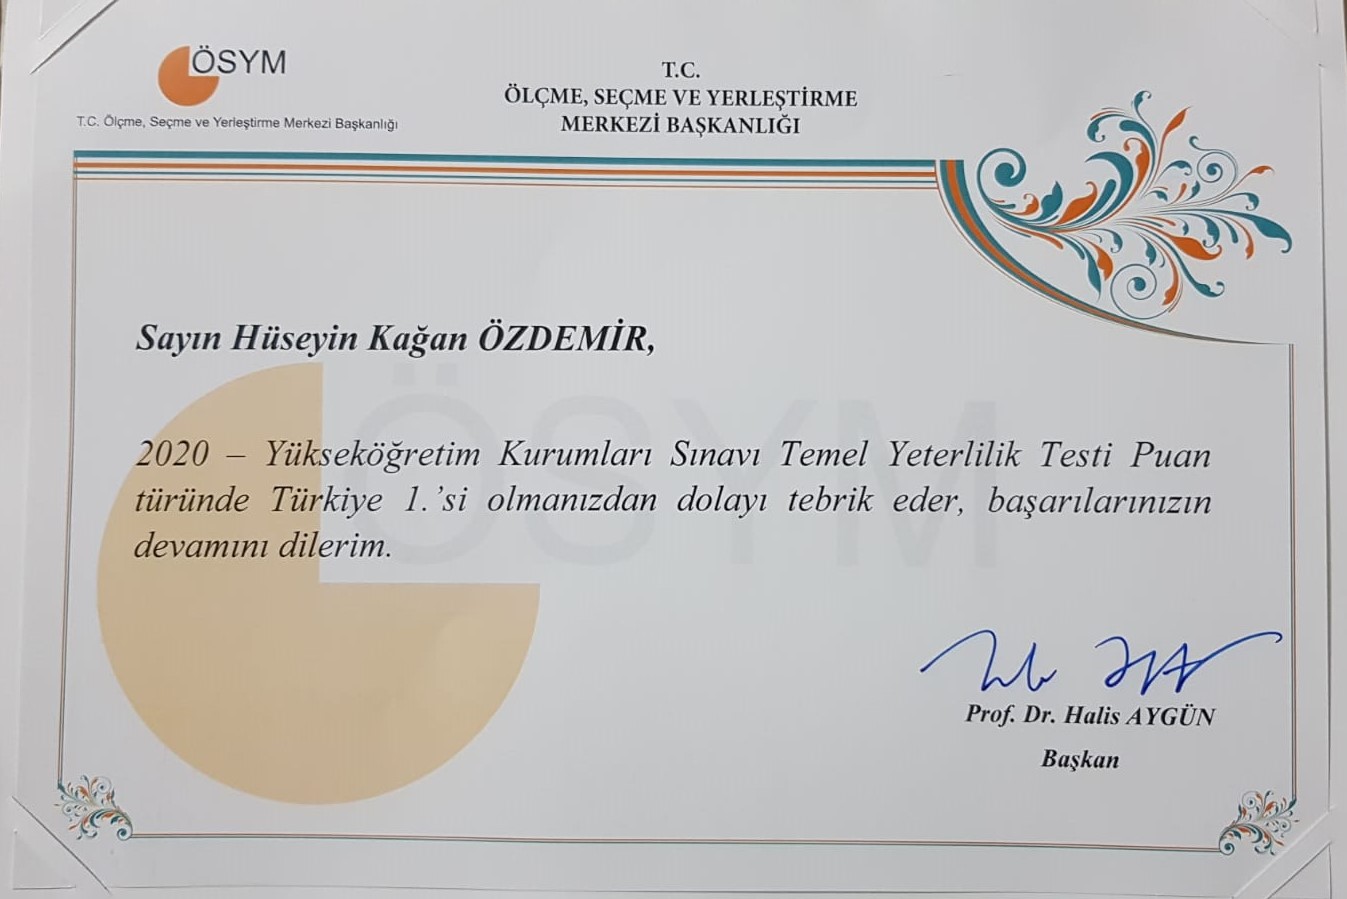 ÖSYM Başkanı Prof. Dr. Halis Aygün’den Hüseyin Kağan Özdemir’e Tebrik!